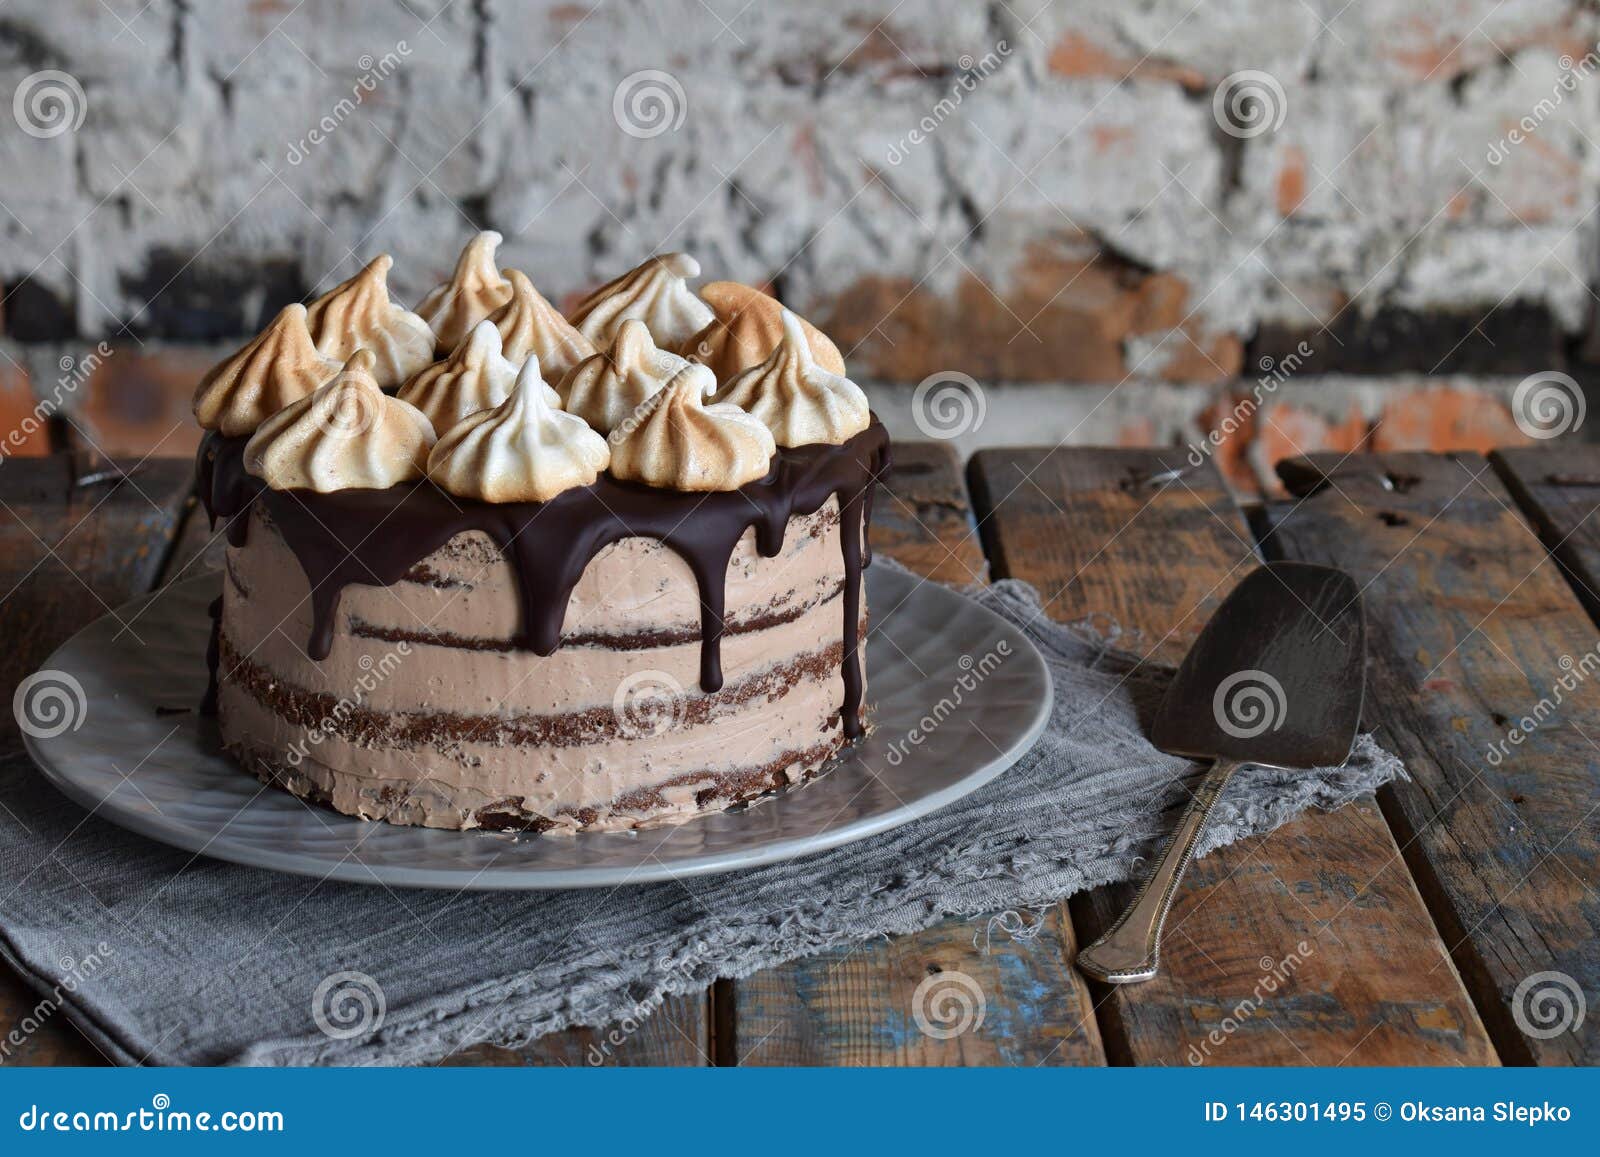 Chocolate Cake Decorated with Rosettes of Meringue Cream ...